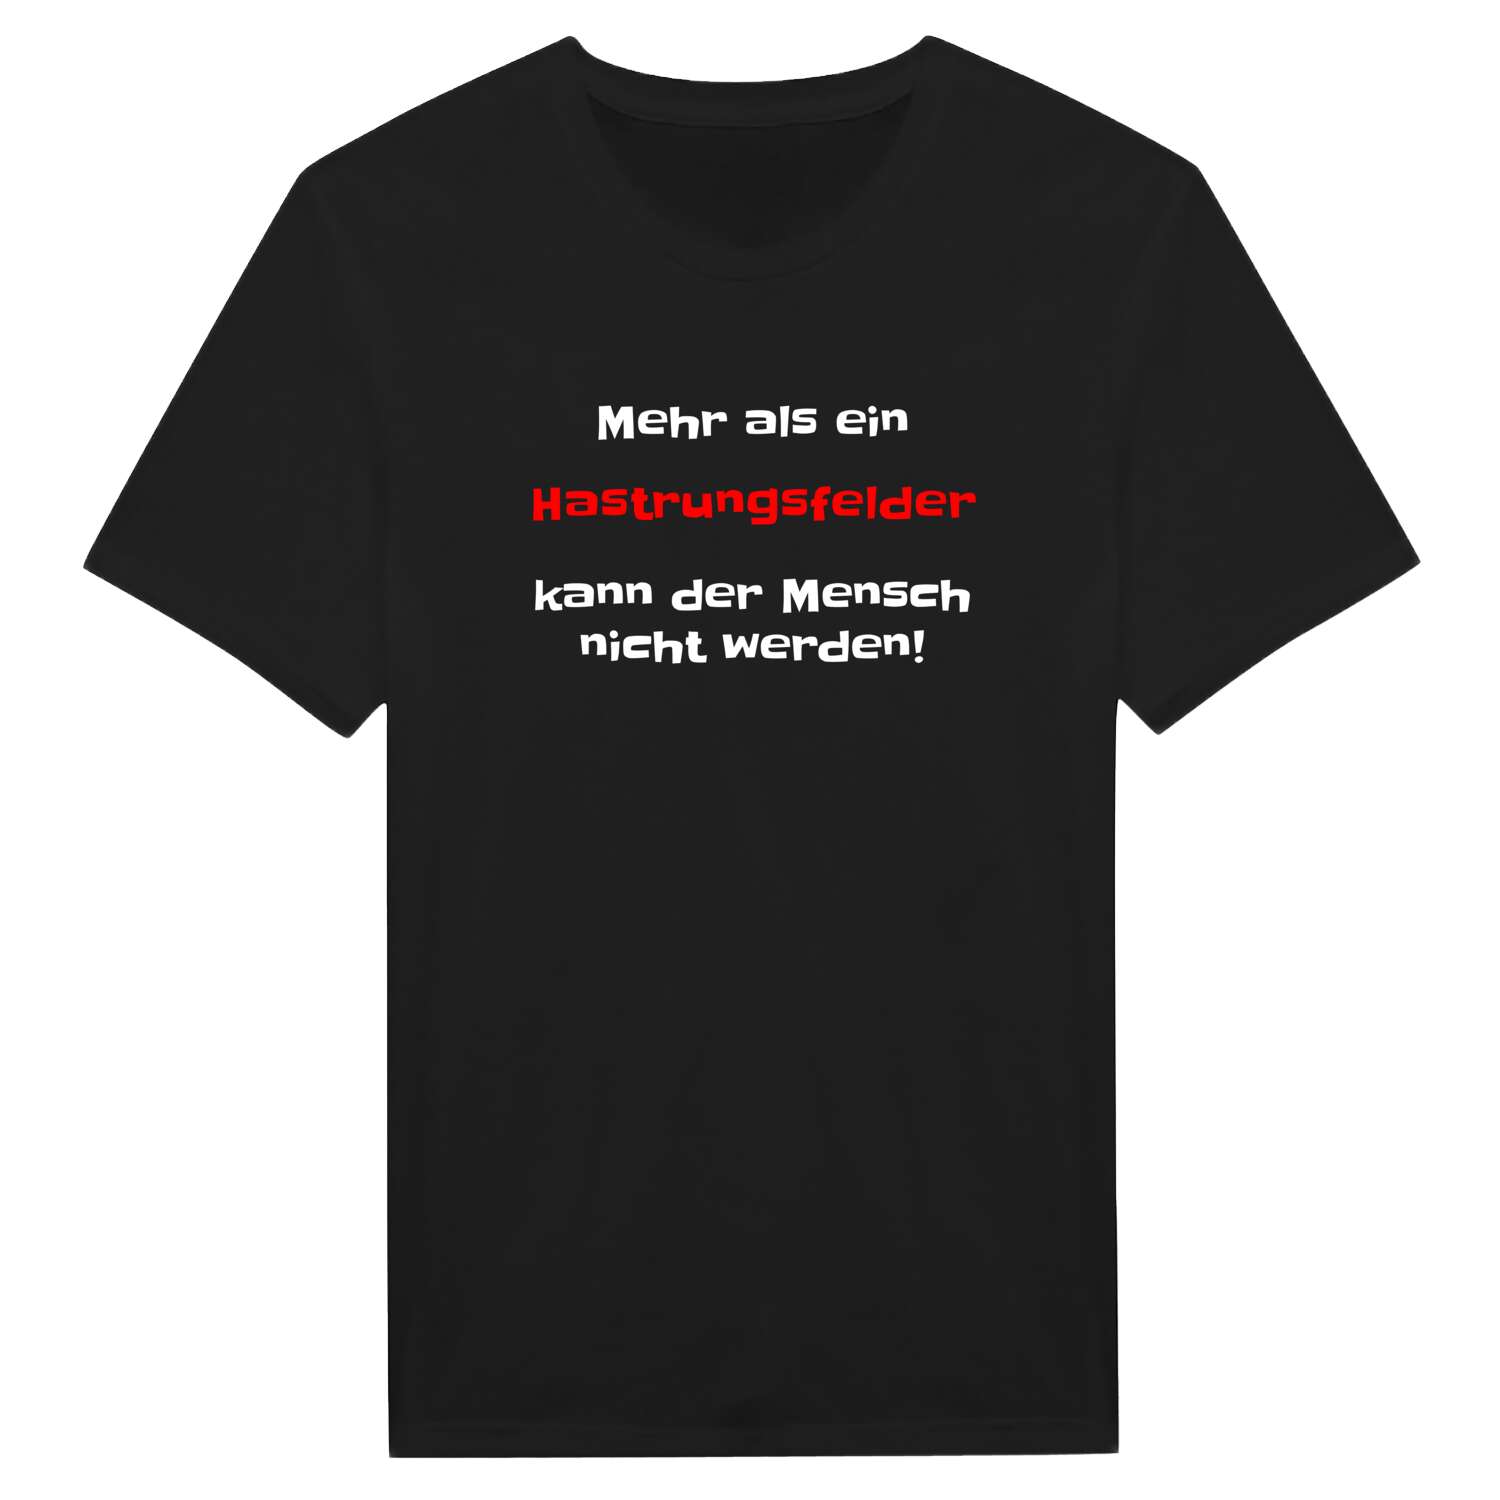 Hastrungsfeld T-Shirt »Mehr als ein«